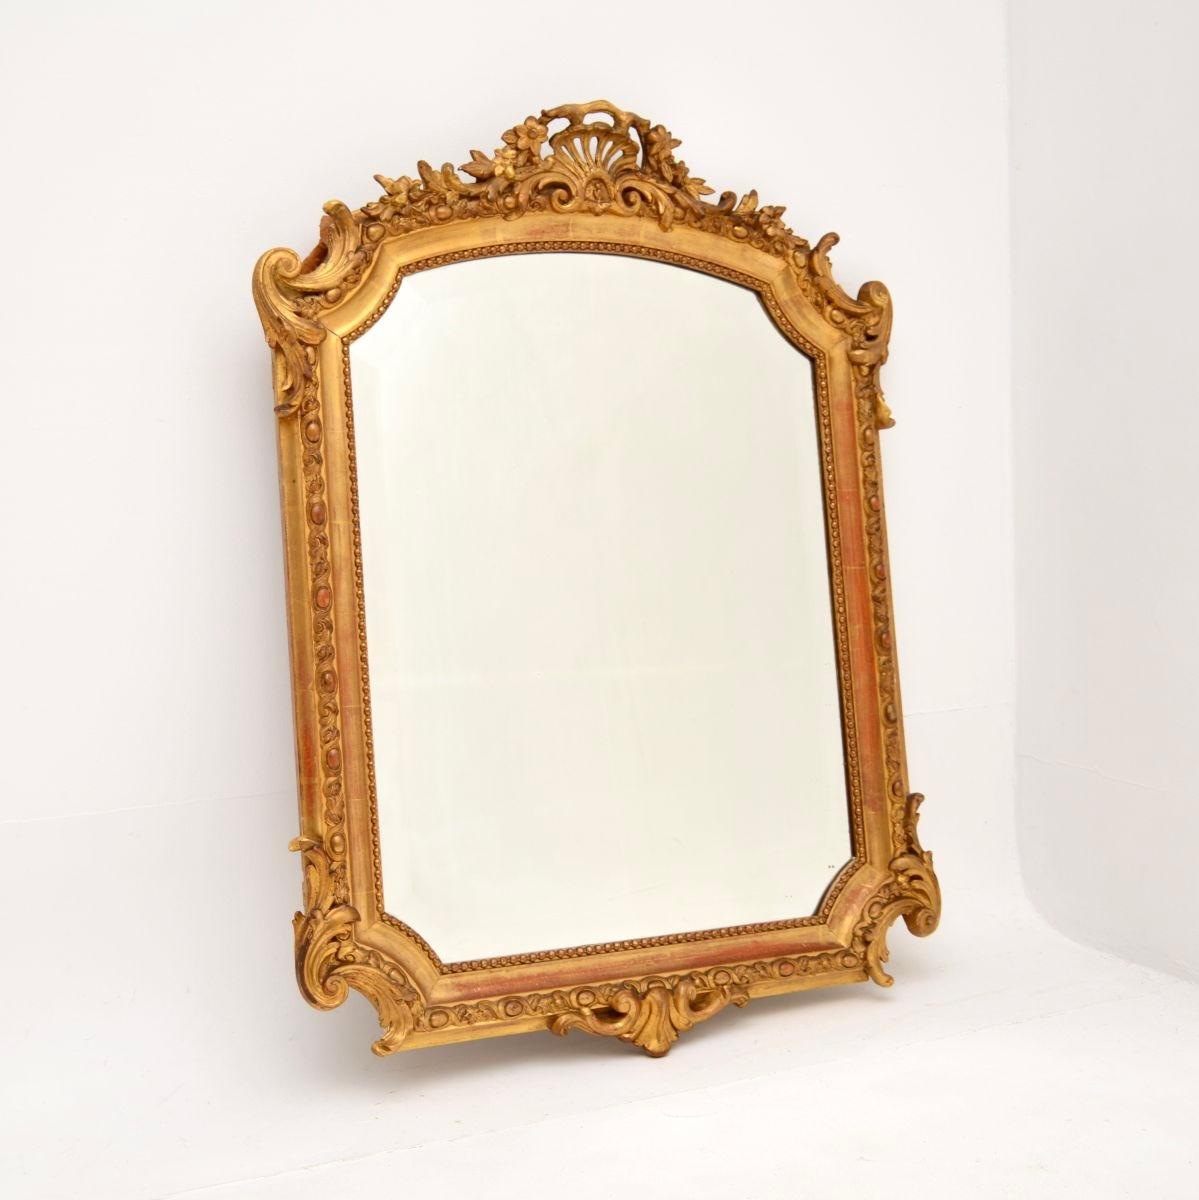 Un miroir ancien en bois doré, datant des années 1860-1880, est absolument magnifique et extrêmement bien fait.

La qualité est exceptionnelle, ce meuble est fabriqué à partir d'un mélange de bois massif et de gesso, avec une magnifique finition